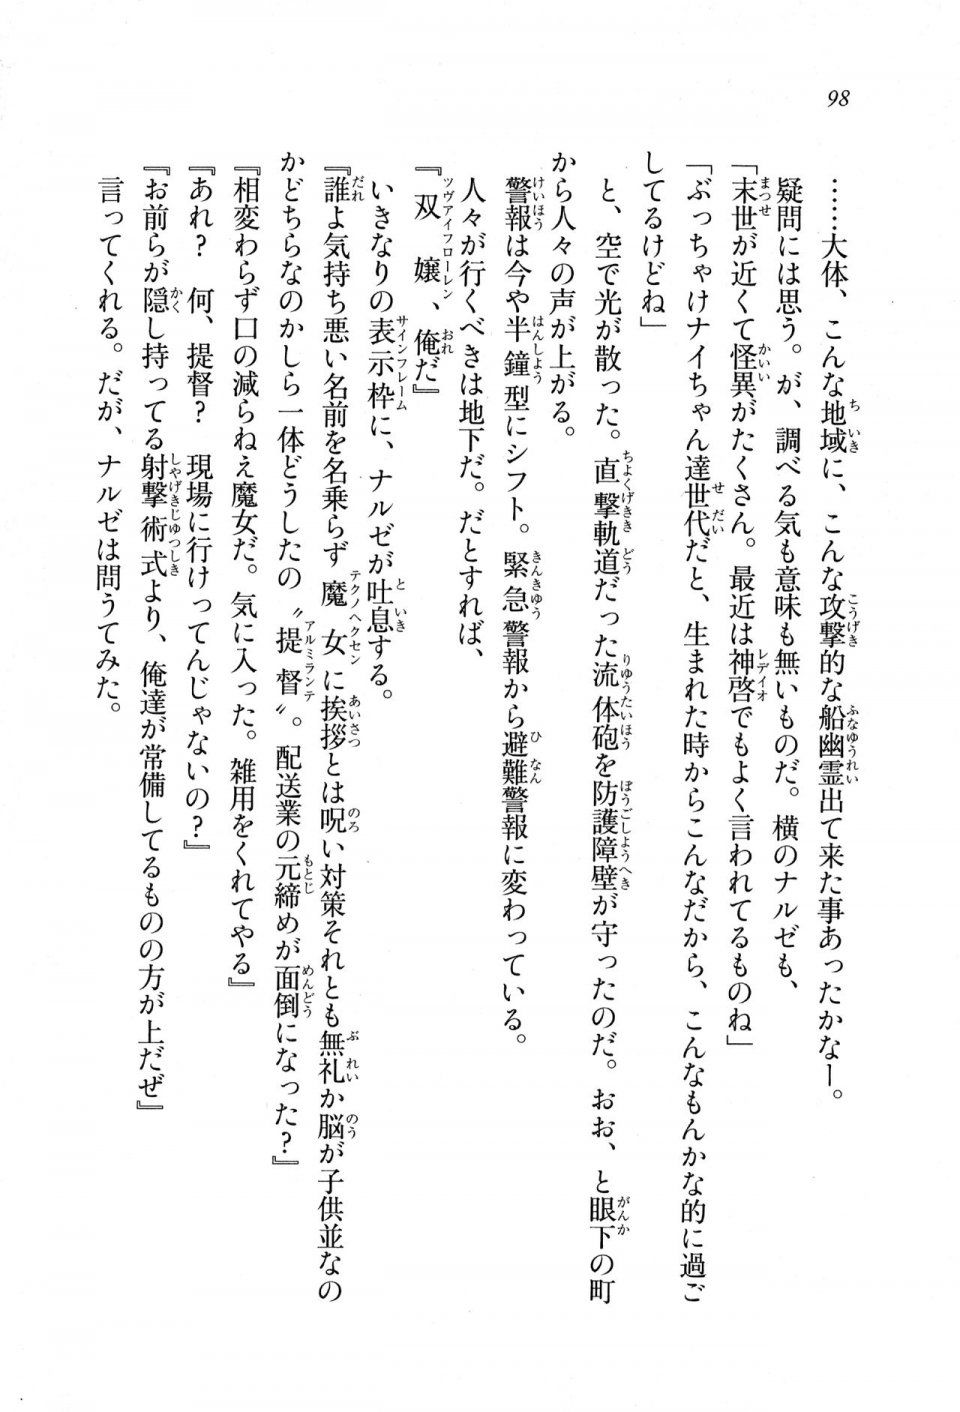 Kyoukai Senjou no Horizon LN Sidestory Vol 1 - Photo #96